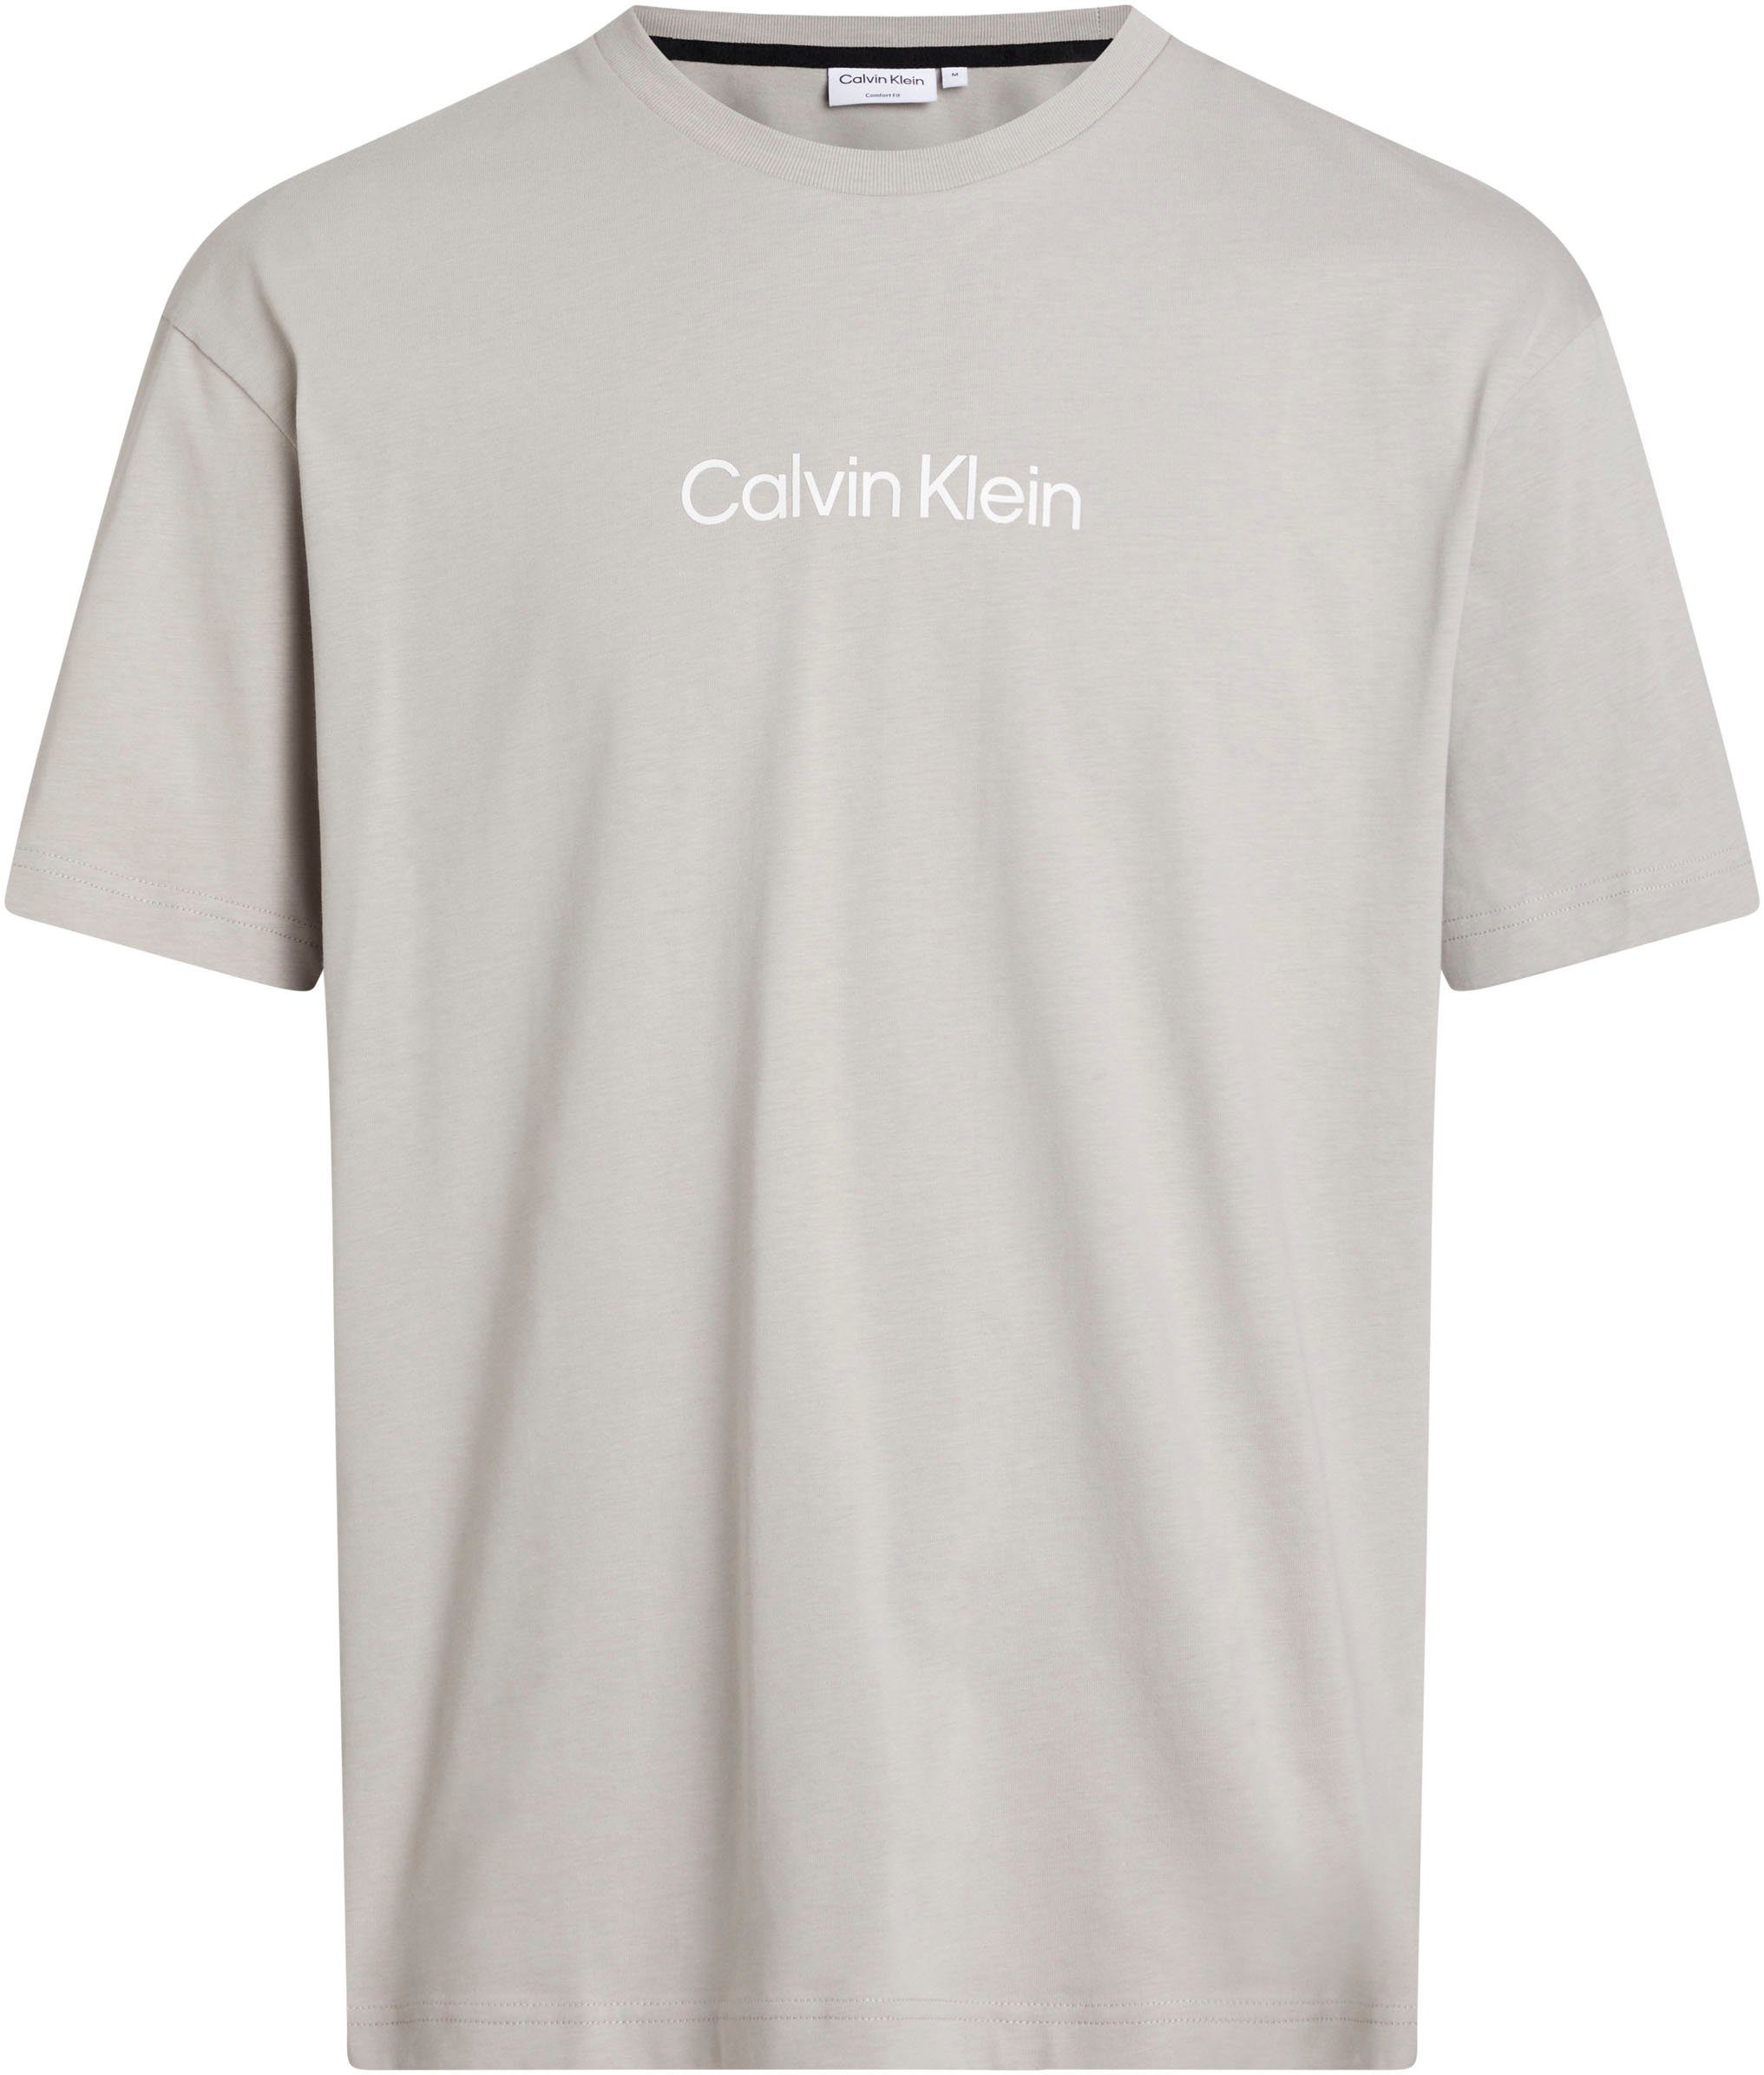 Calvin Klein T-Shirt Markenlabel HERO Ghost COMFORT mit LOGO Gray aufgedrucktem T-SHIRT